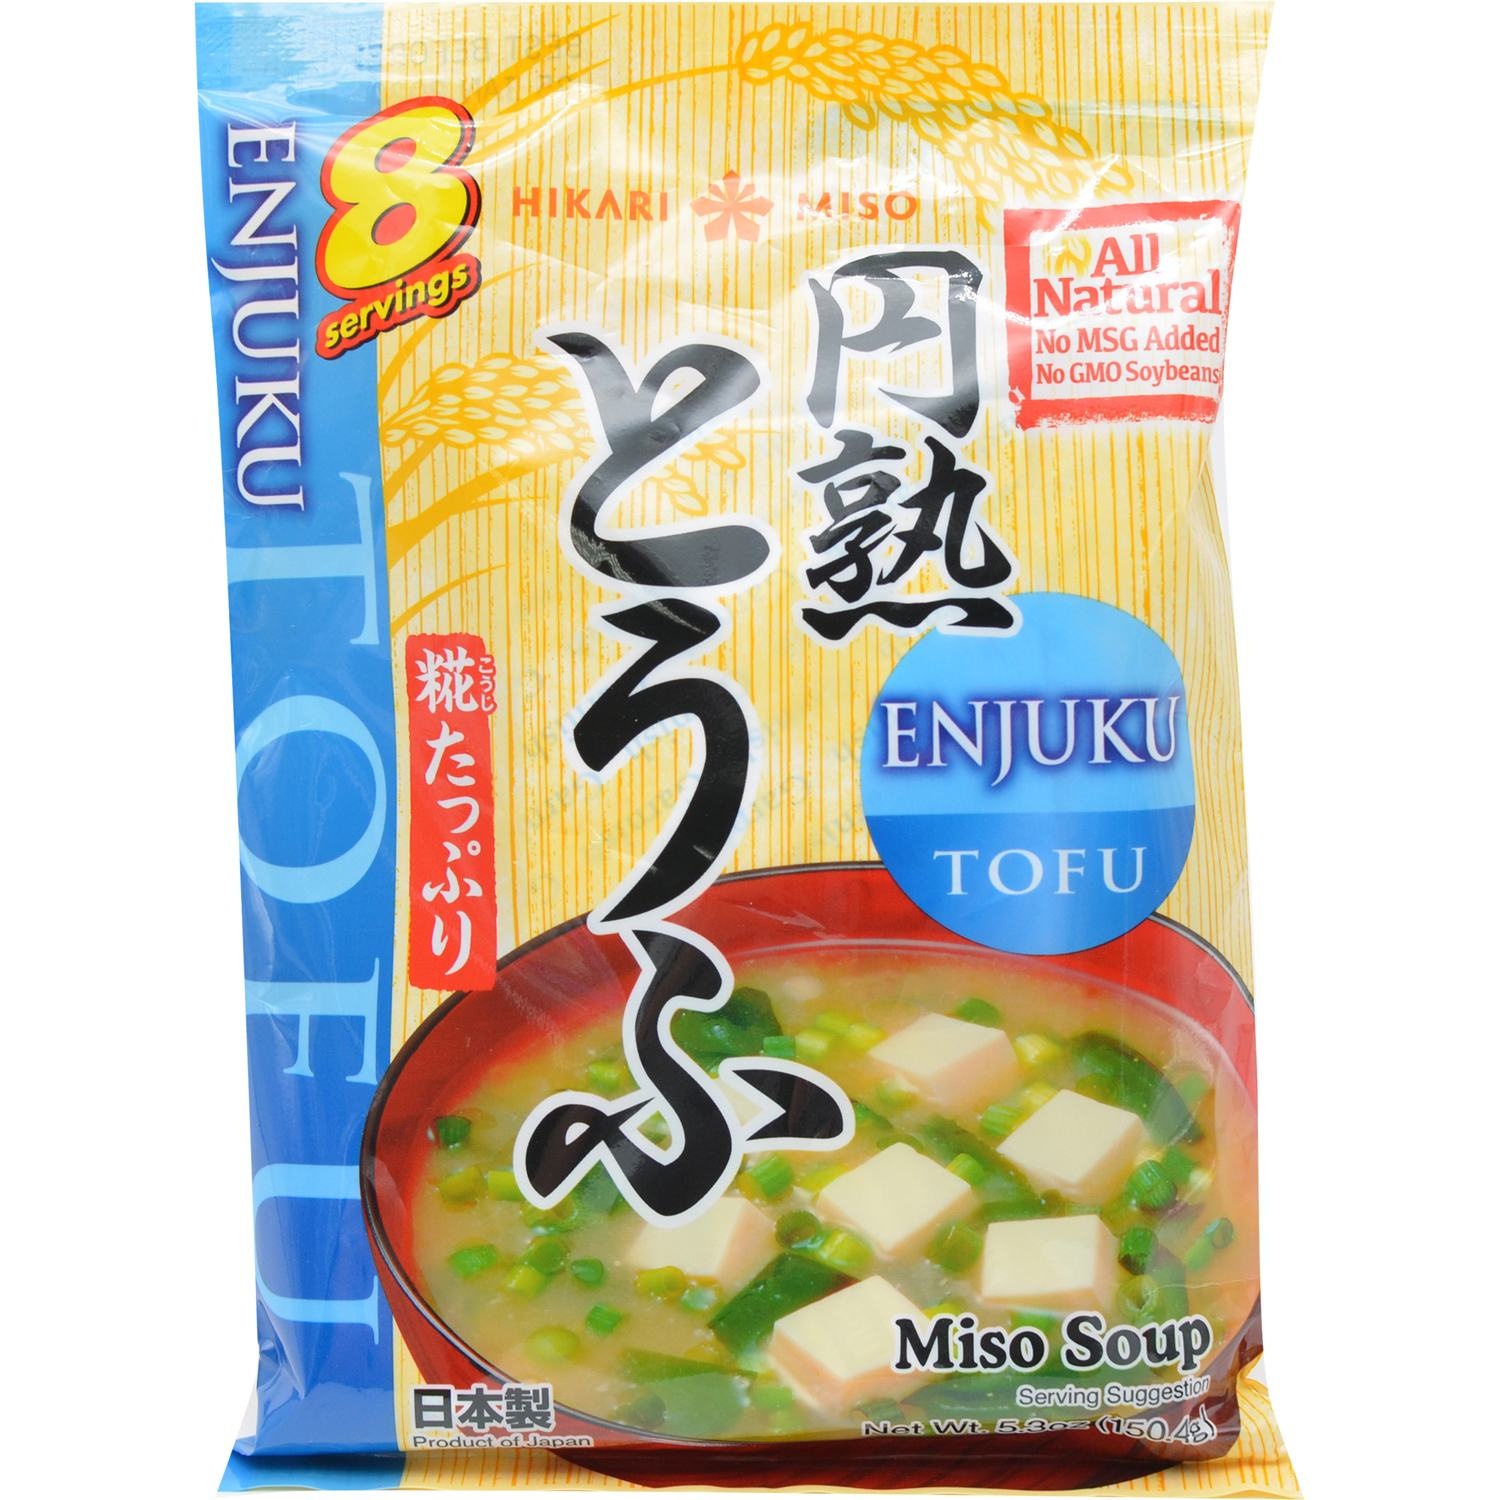 slide 1 of 1, Hikari Miso Inst 8p Tofu, 5.3 oz